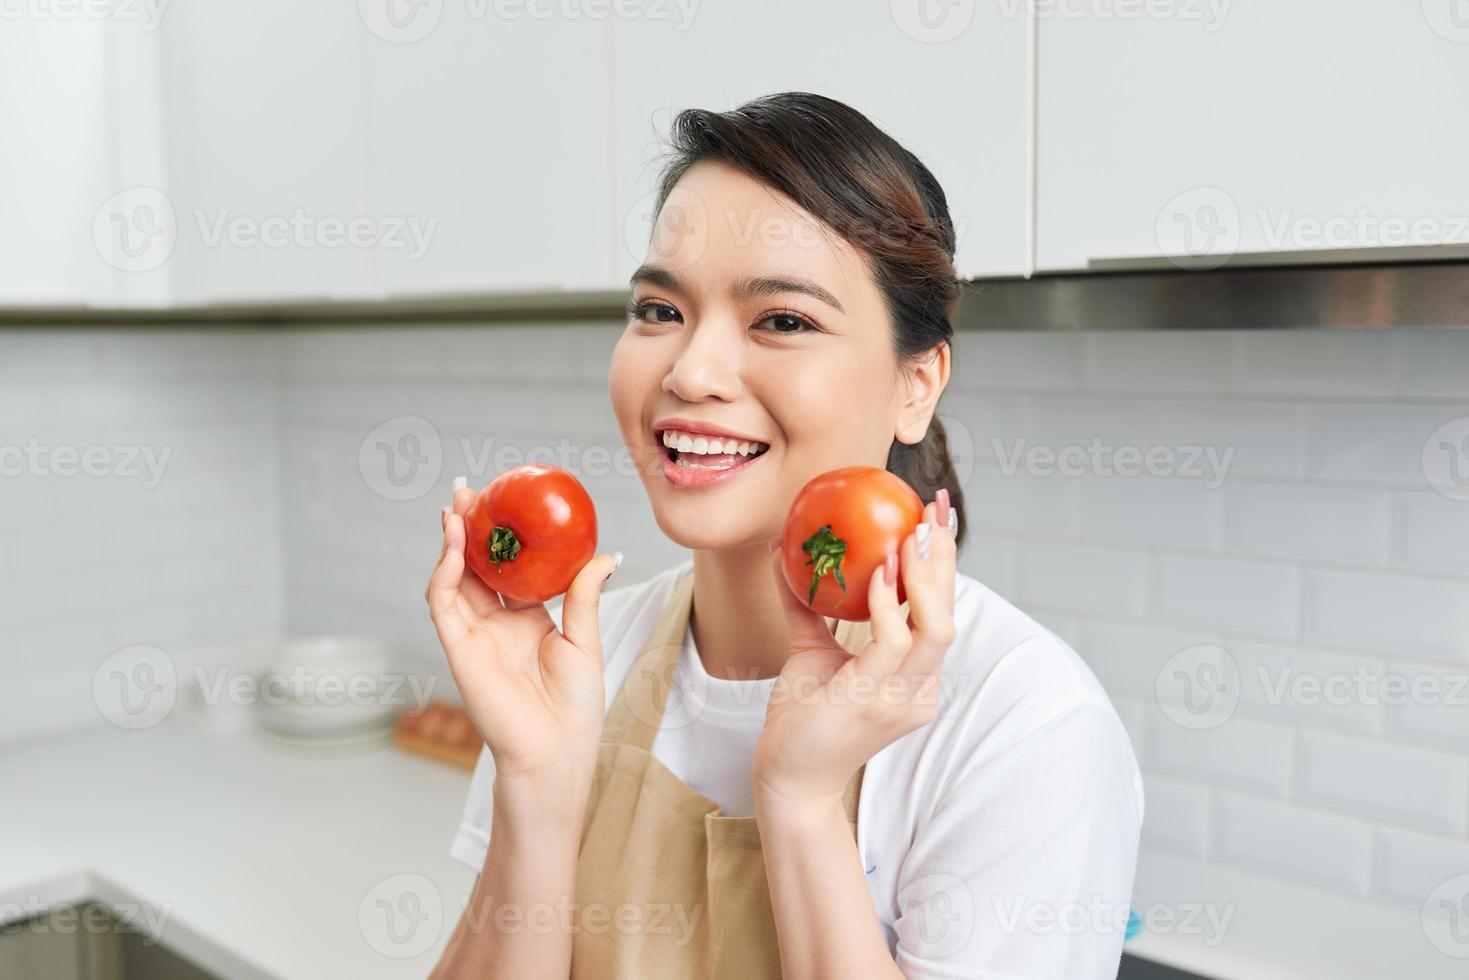 retrato de ella ella bonita atractiva encantadora segura de sí misma alegre chica alegre sosteniendo en las manos tomate cocinando todos los días comida doméstica almuerzo verduras en la moderna cocina interior blanca clara foto